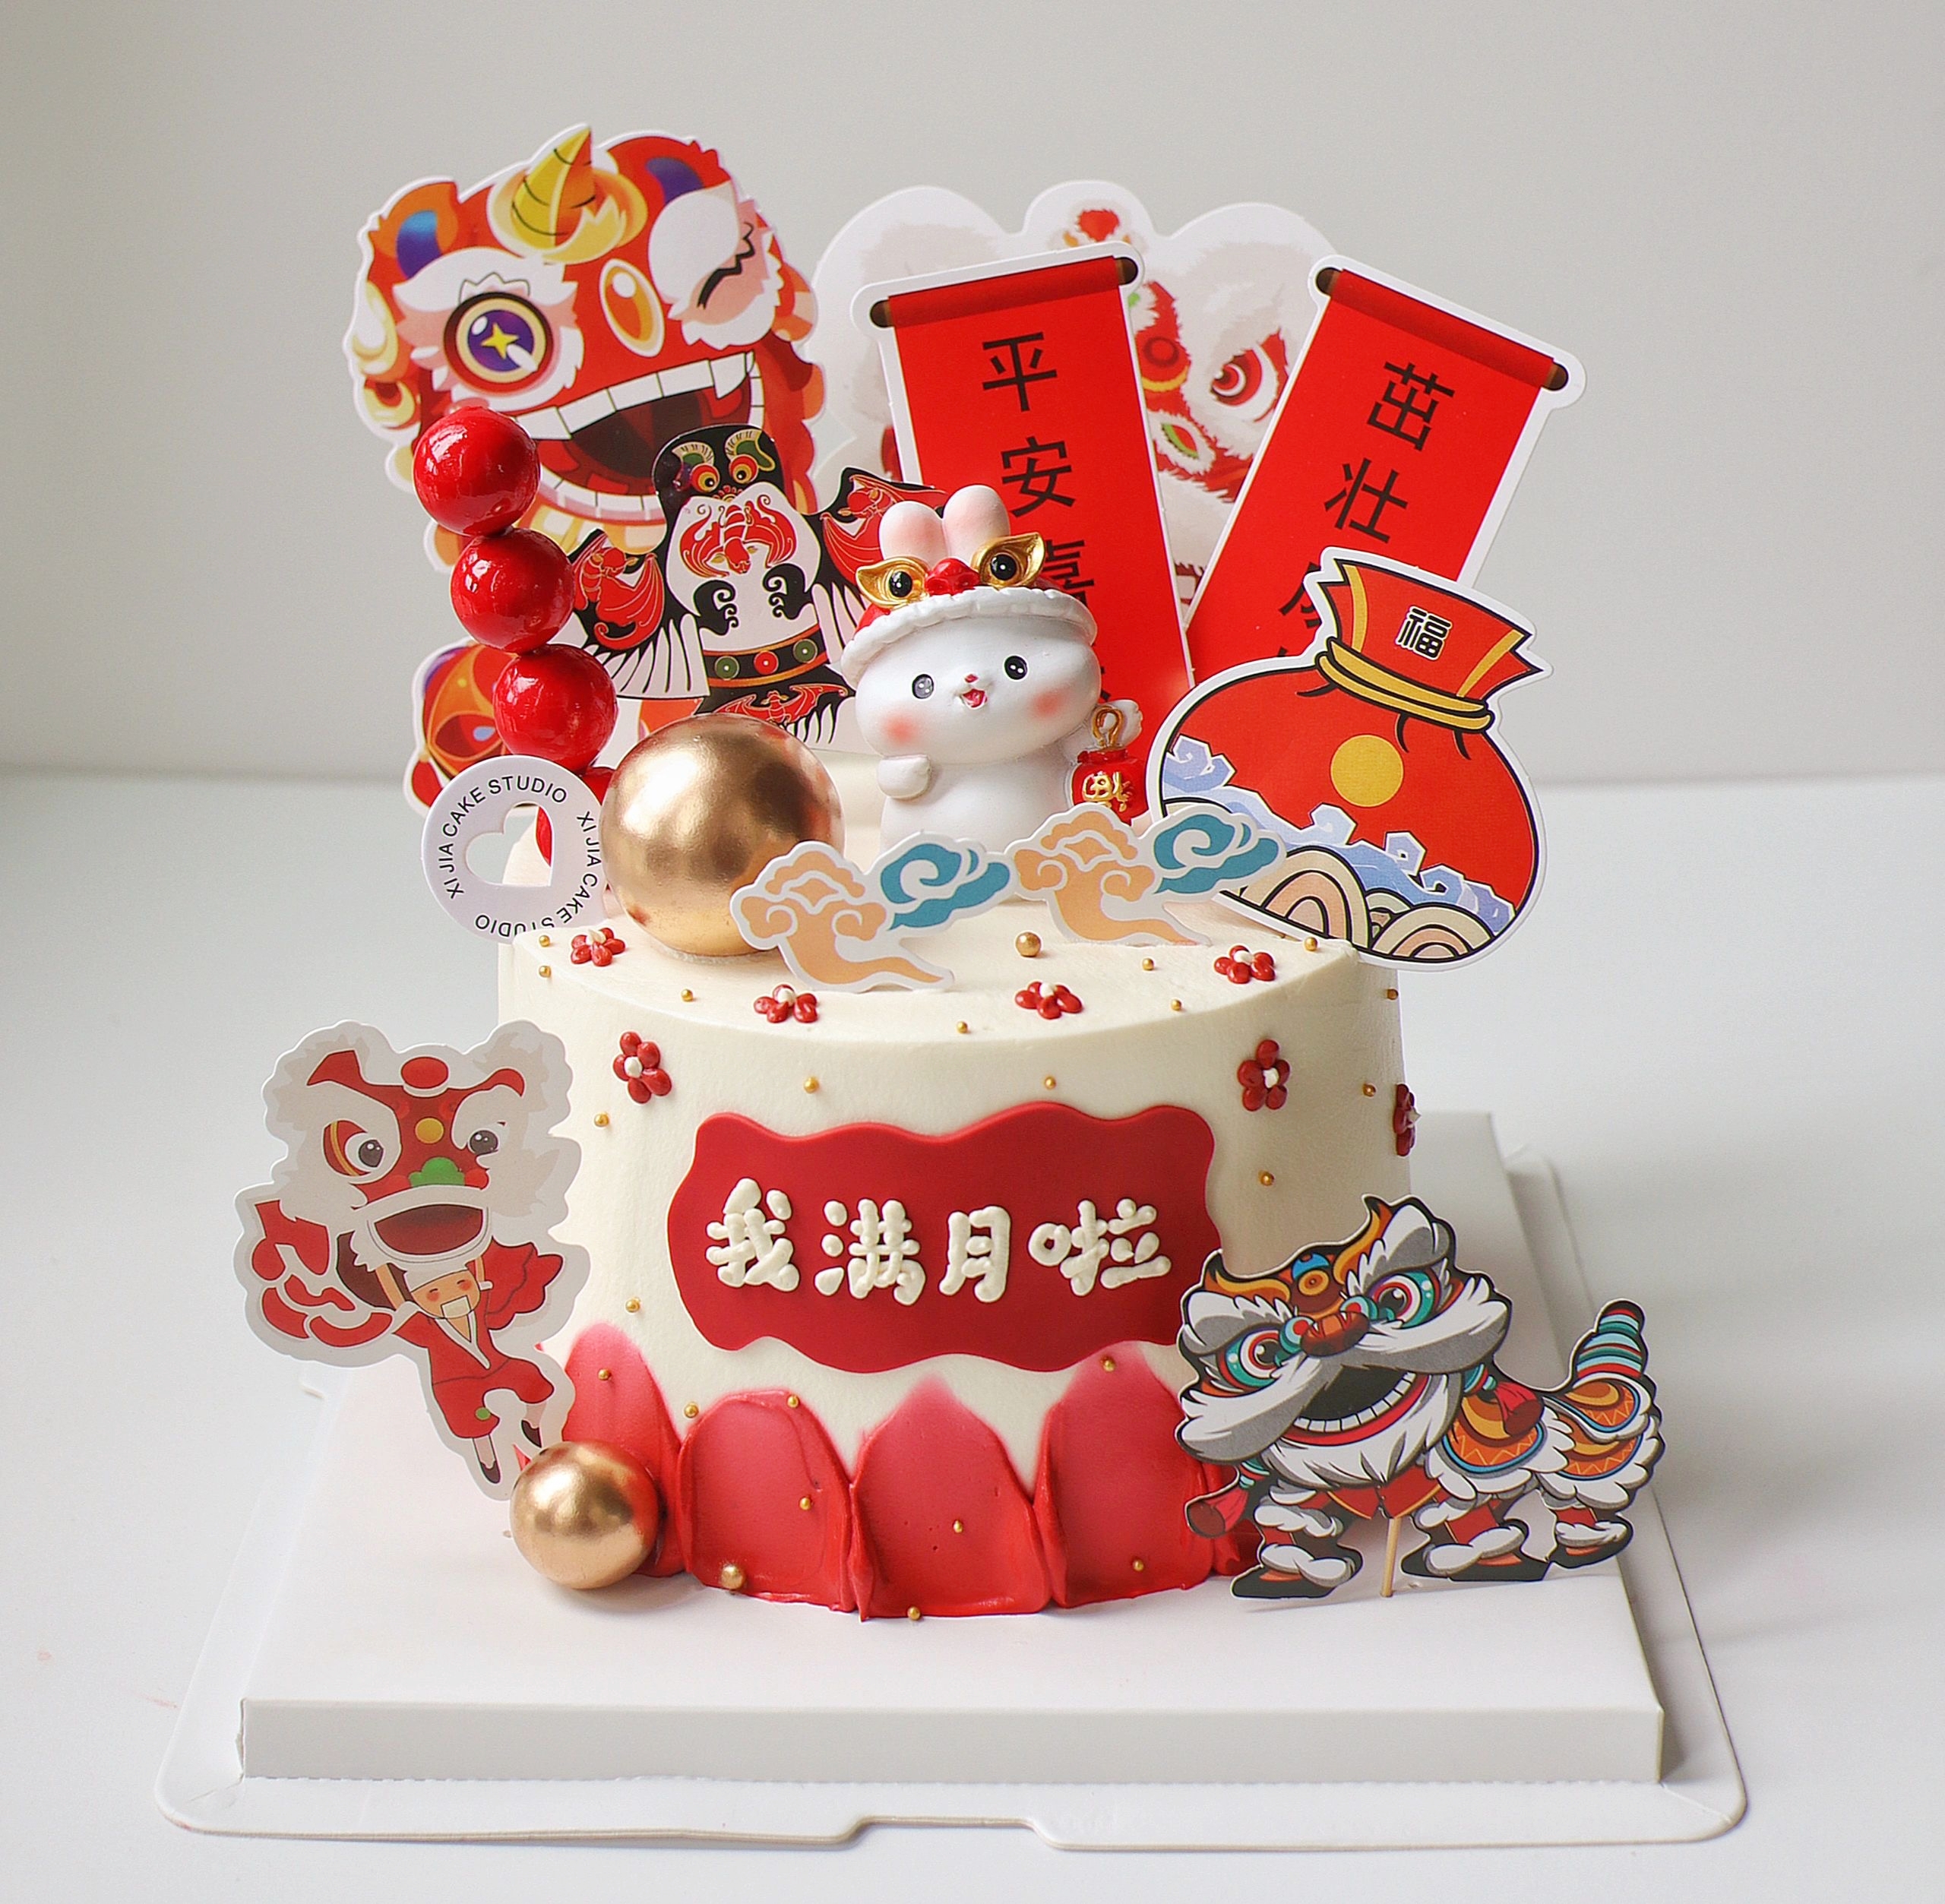 小兔子宝宝满月百天蛋糕装饰100天男孩女孩生日周岁甜品插件插牌